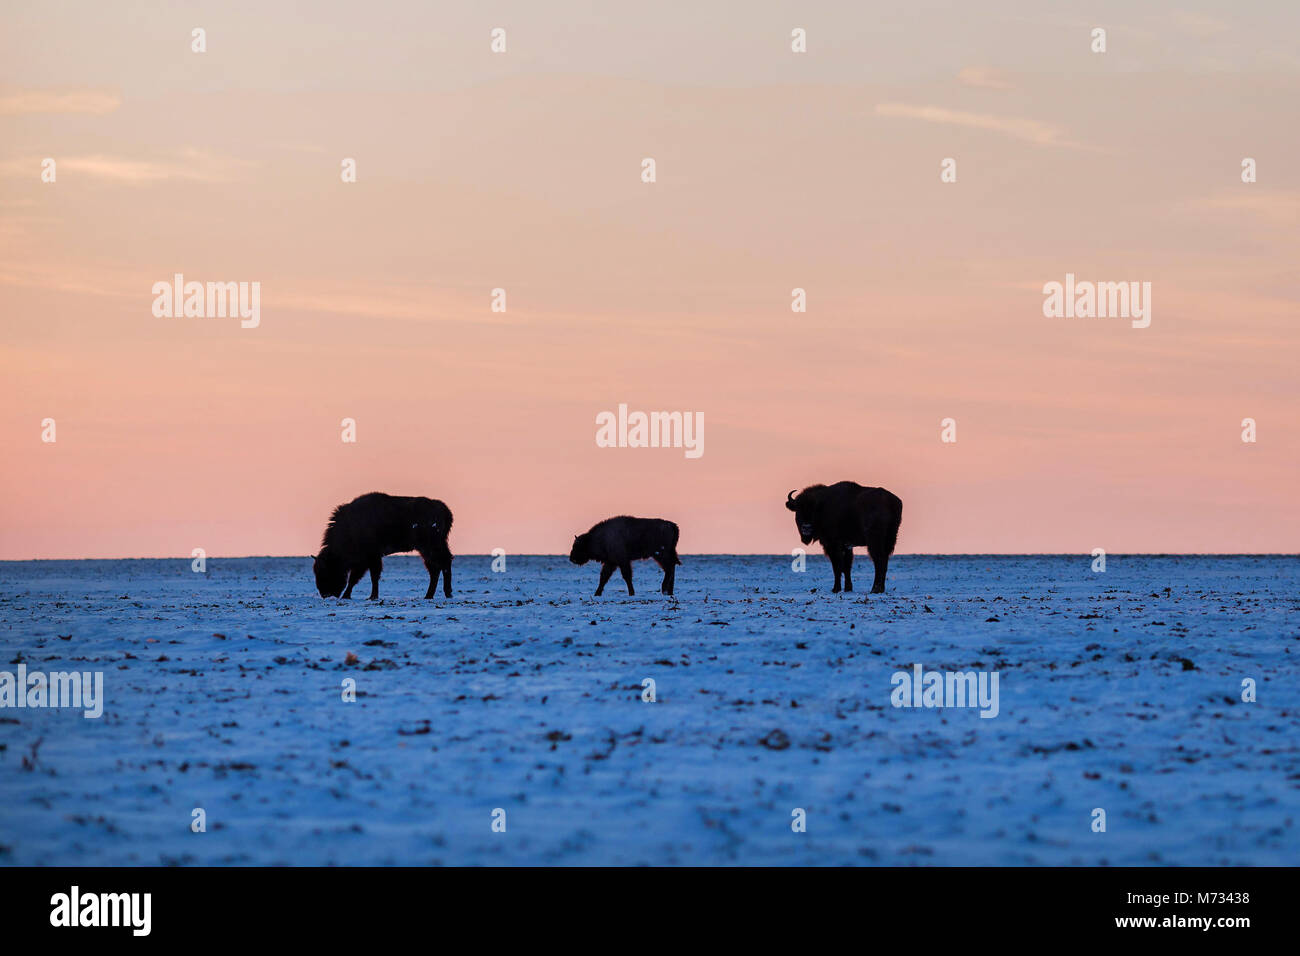 Trois bisons sauvages dans la lumière au coucher du soleil Banque D'Images